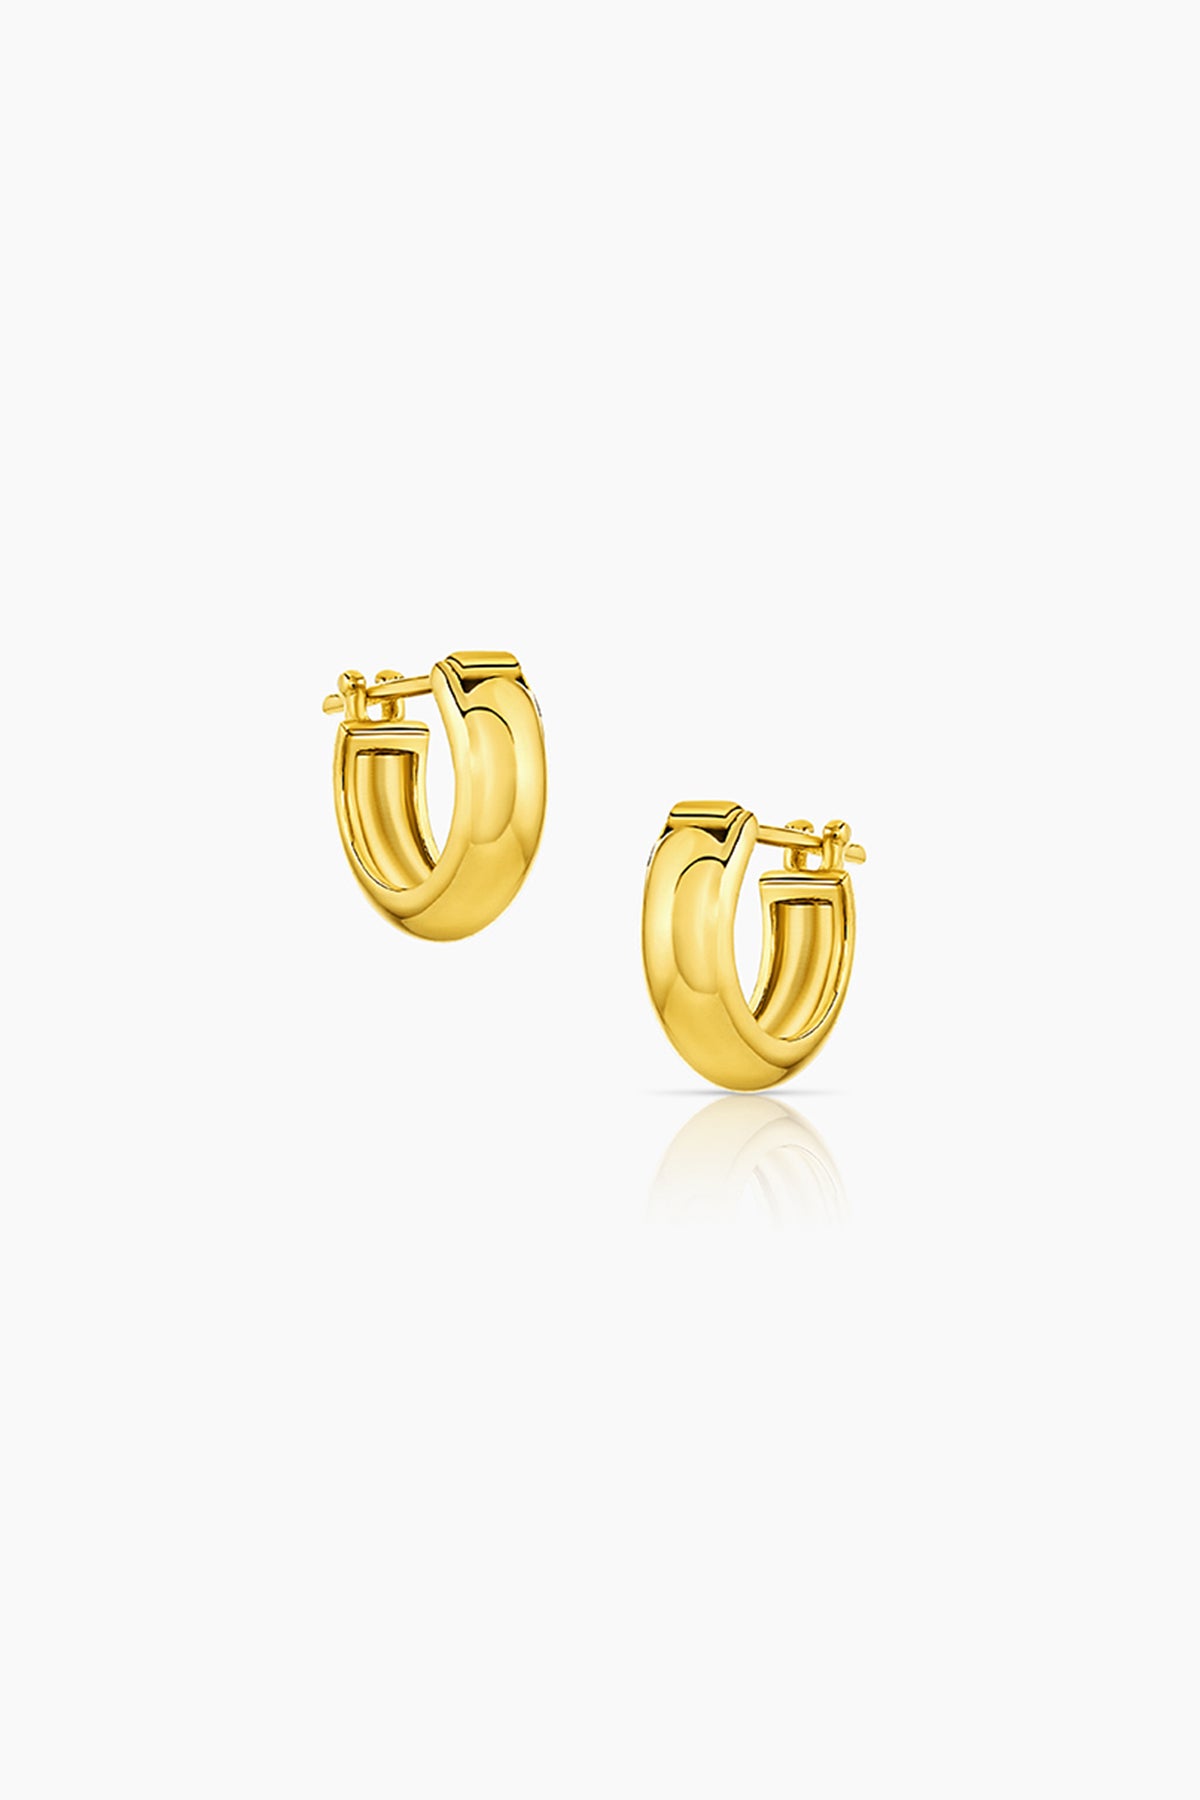   A pair of Thatch yellow gold hoop earrings named VINCE HUGGIE HOOPS. 